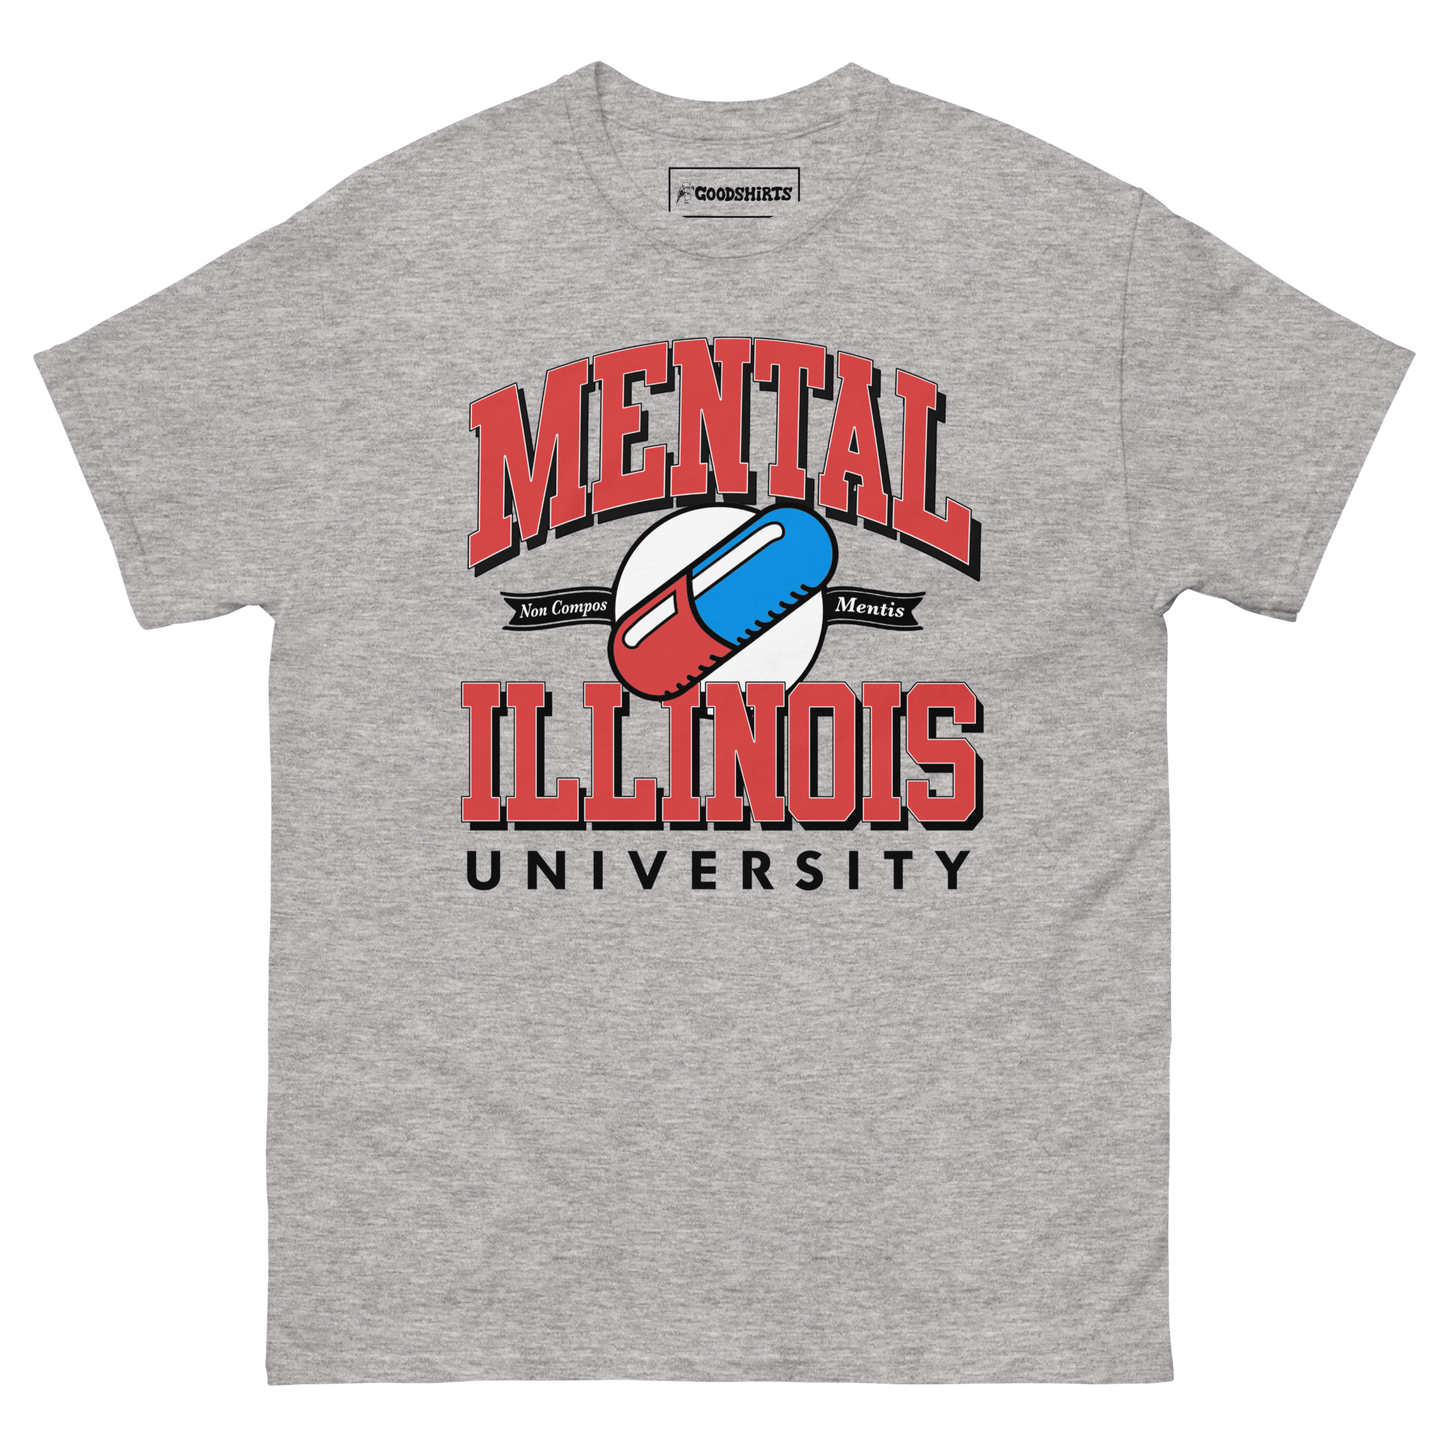 Mental Illinois University.